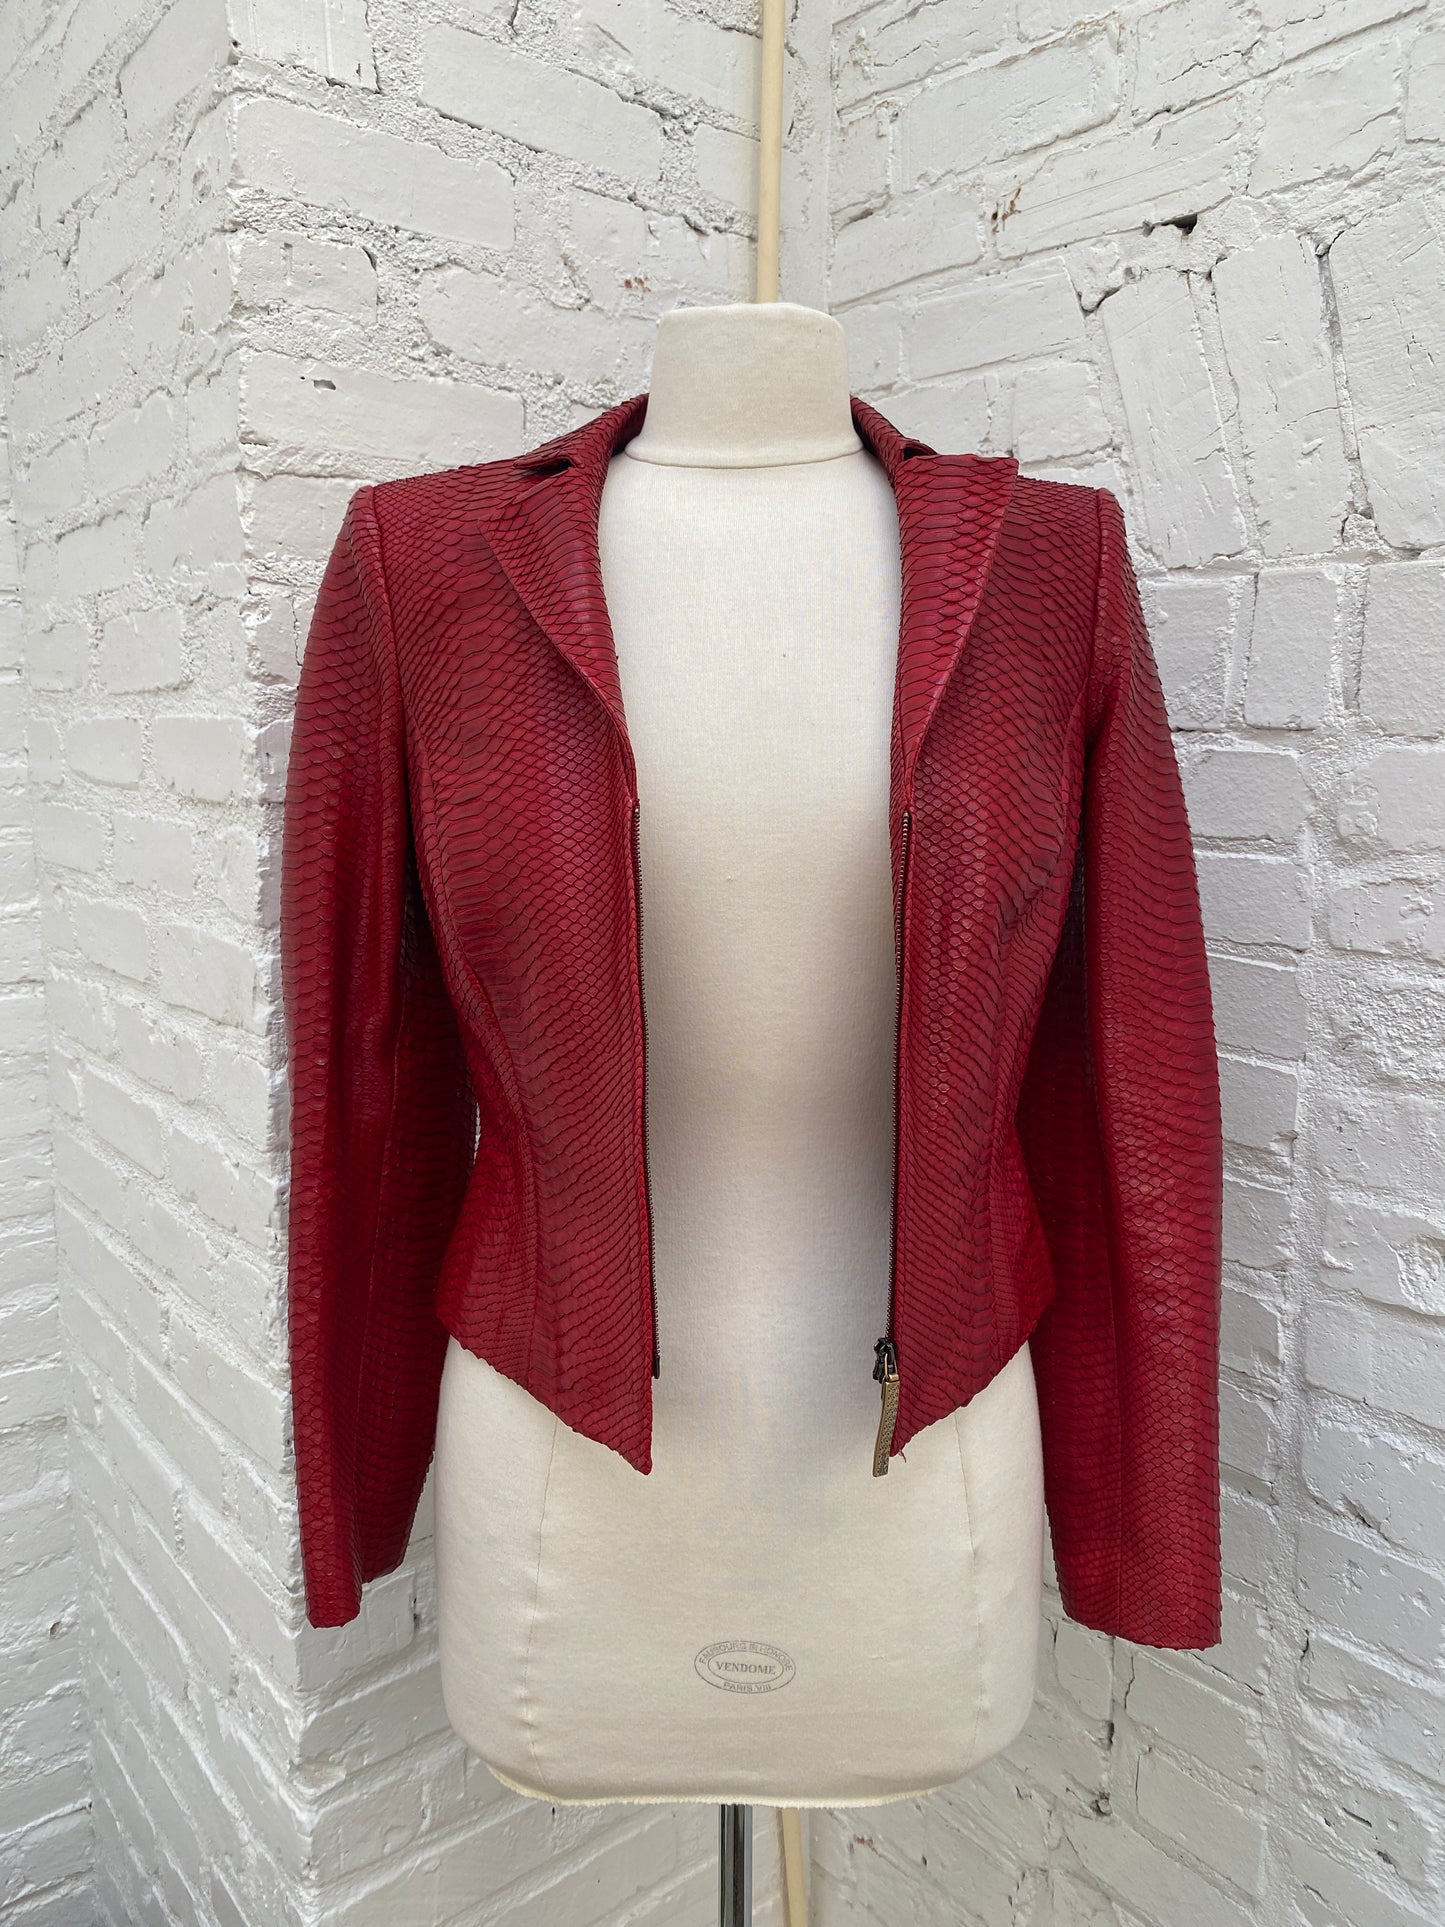 Salvatore Ferragamo Red Python Leather Jacket, 6